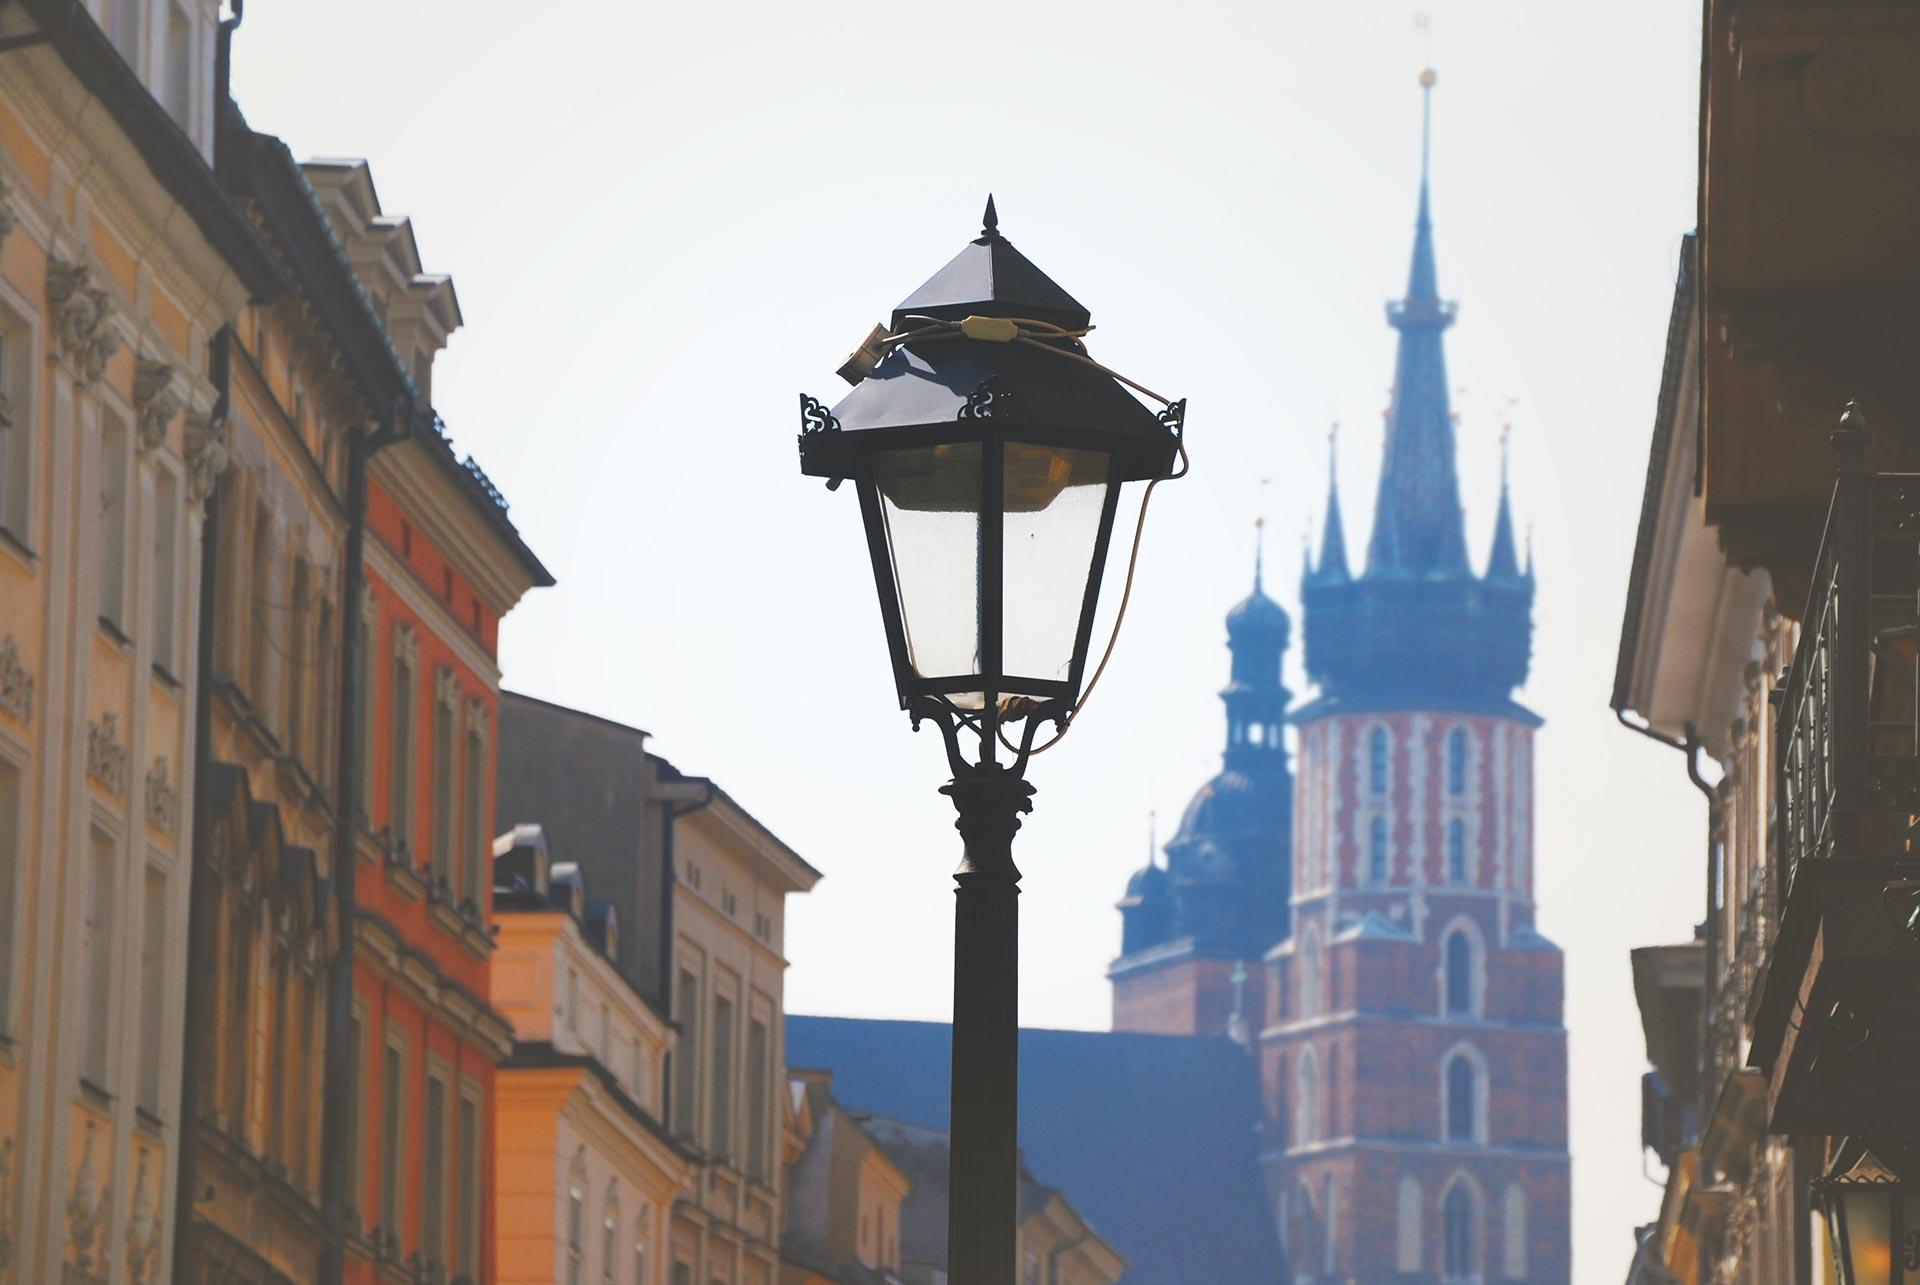 City of Krakow